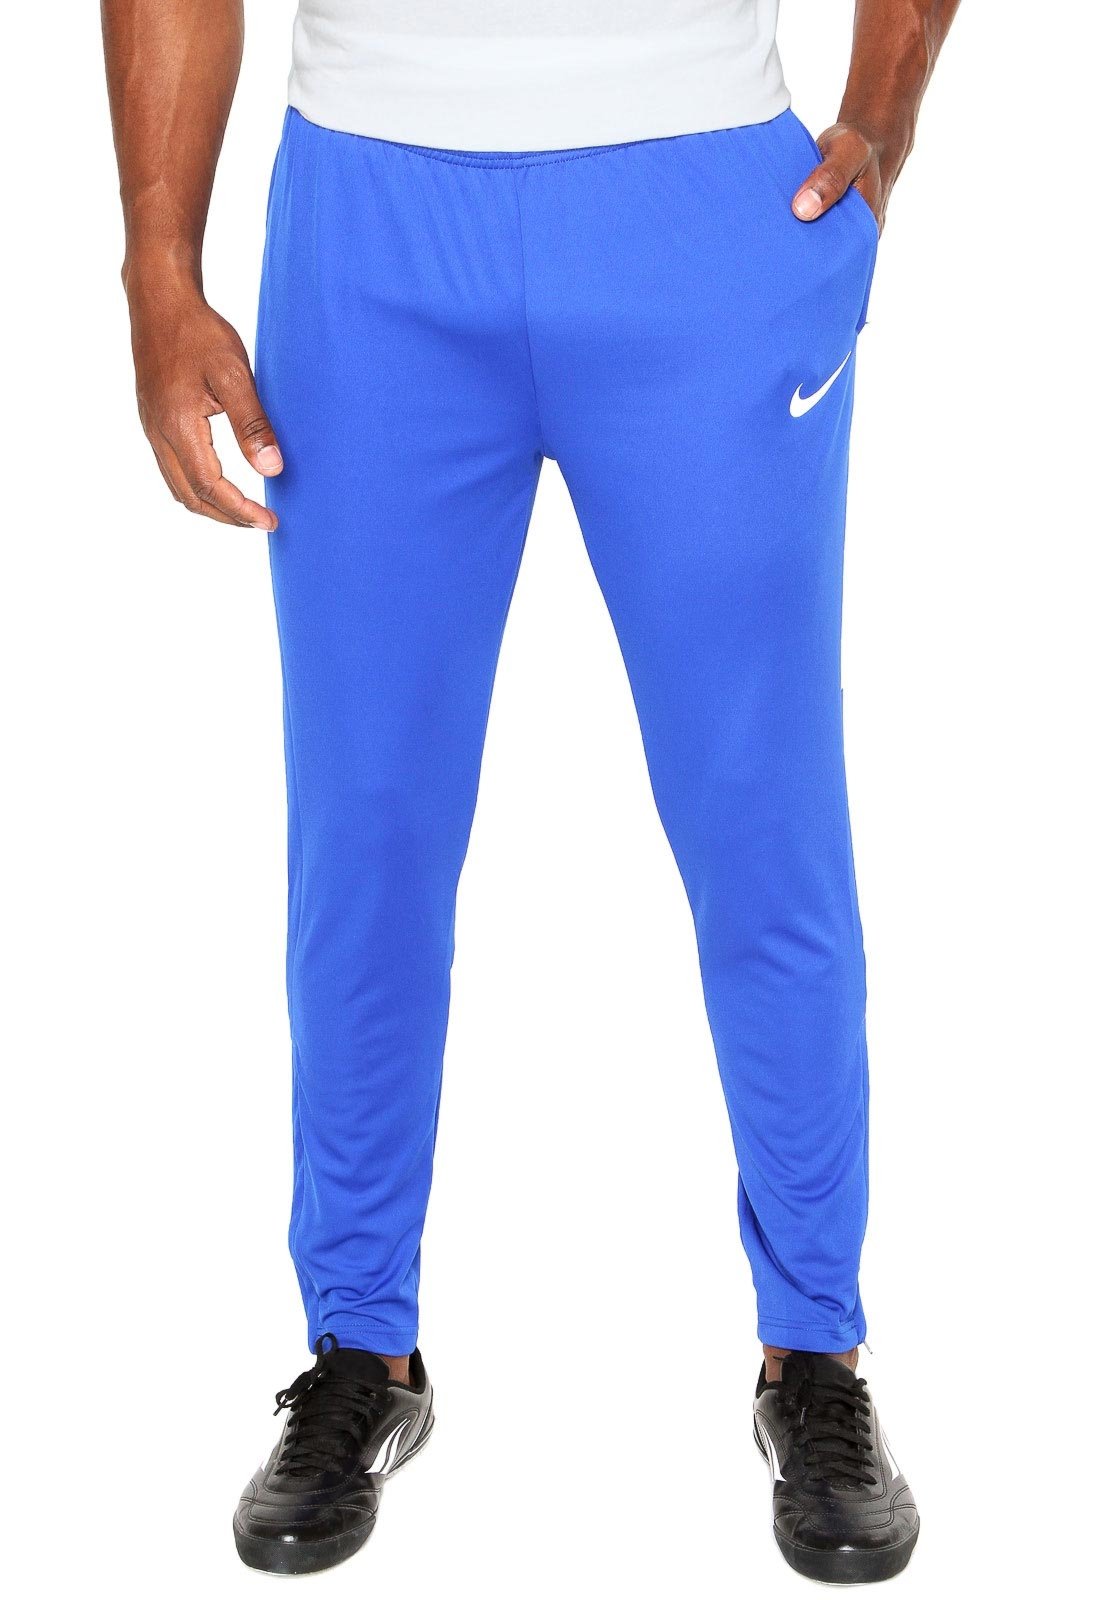 Calça Nike Reta M Nk Pant Epic Knit Azul Marinho - Compre Agora